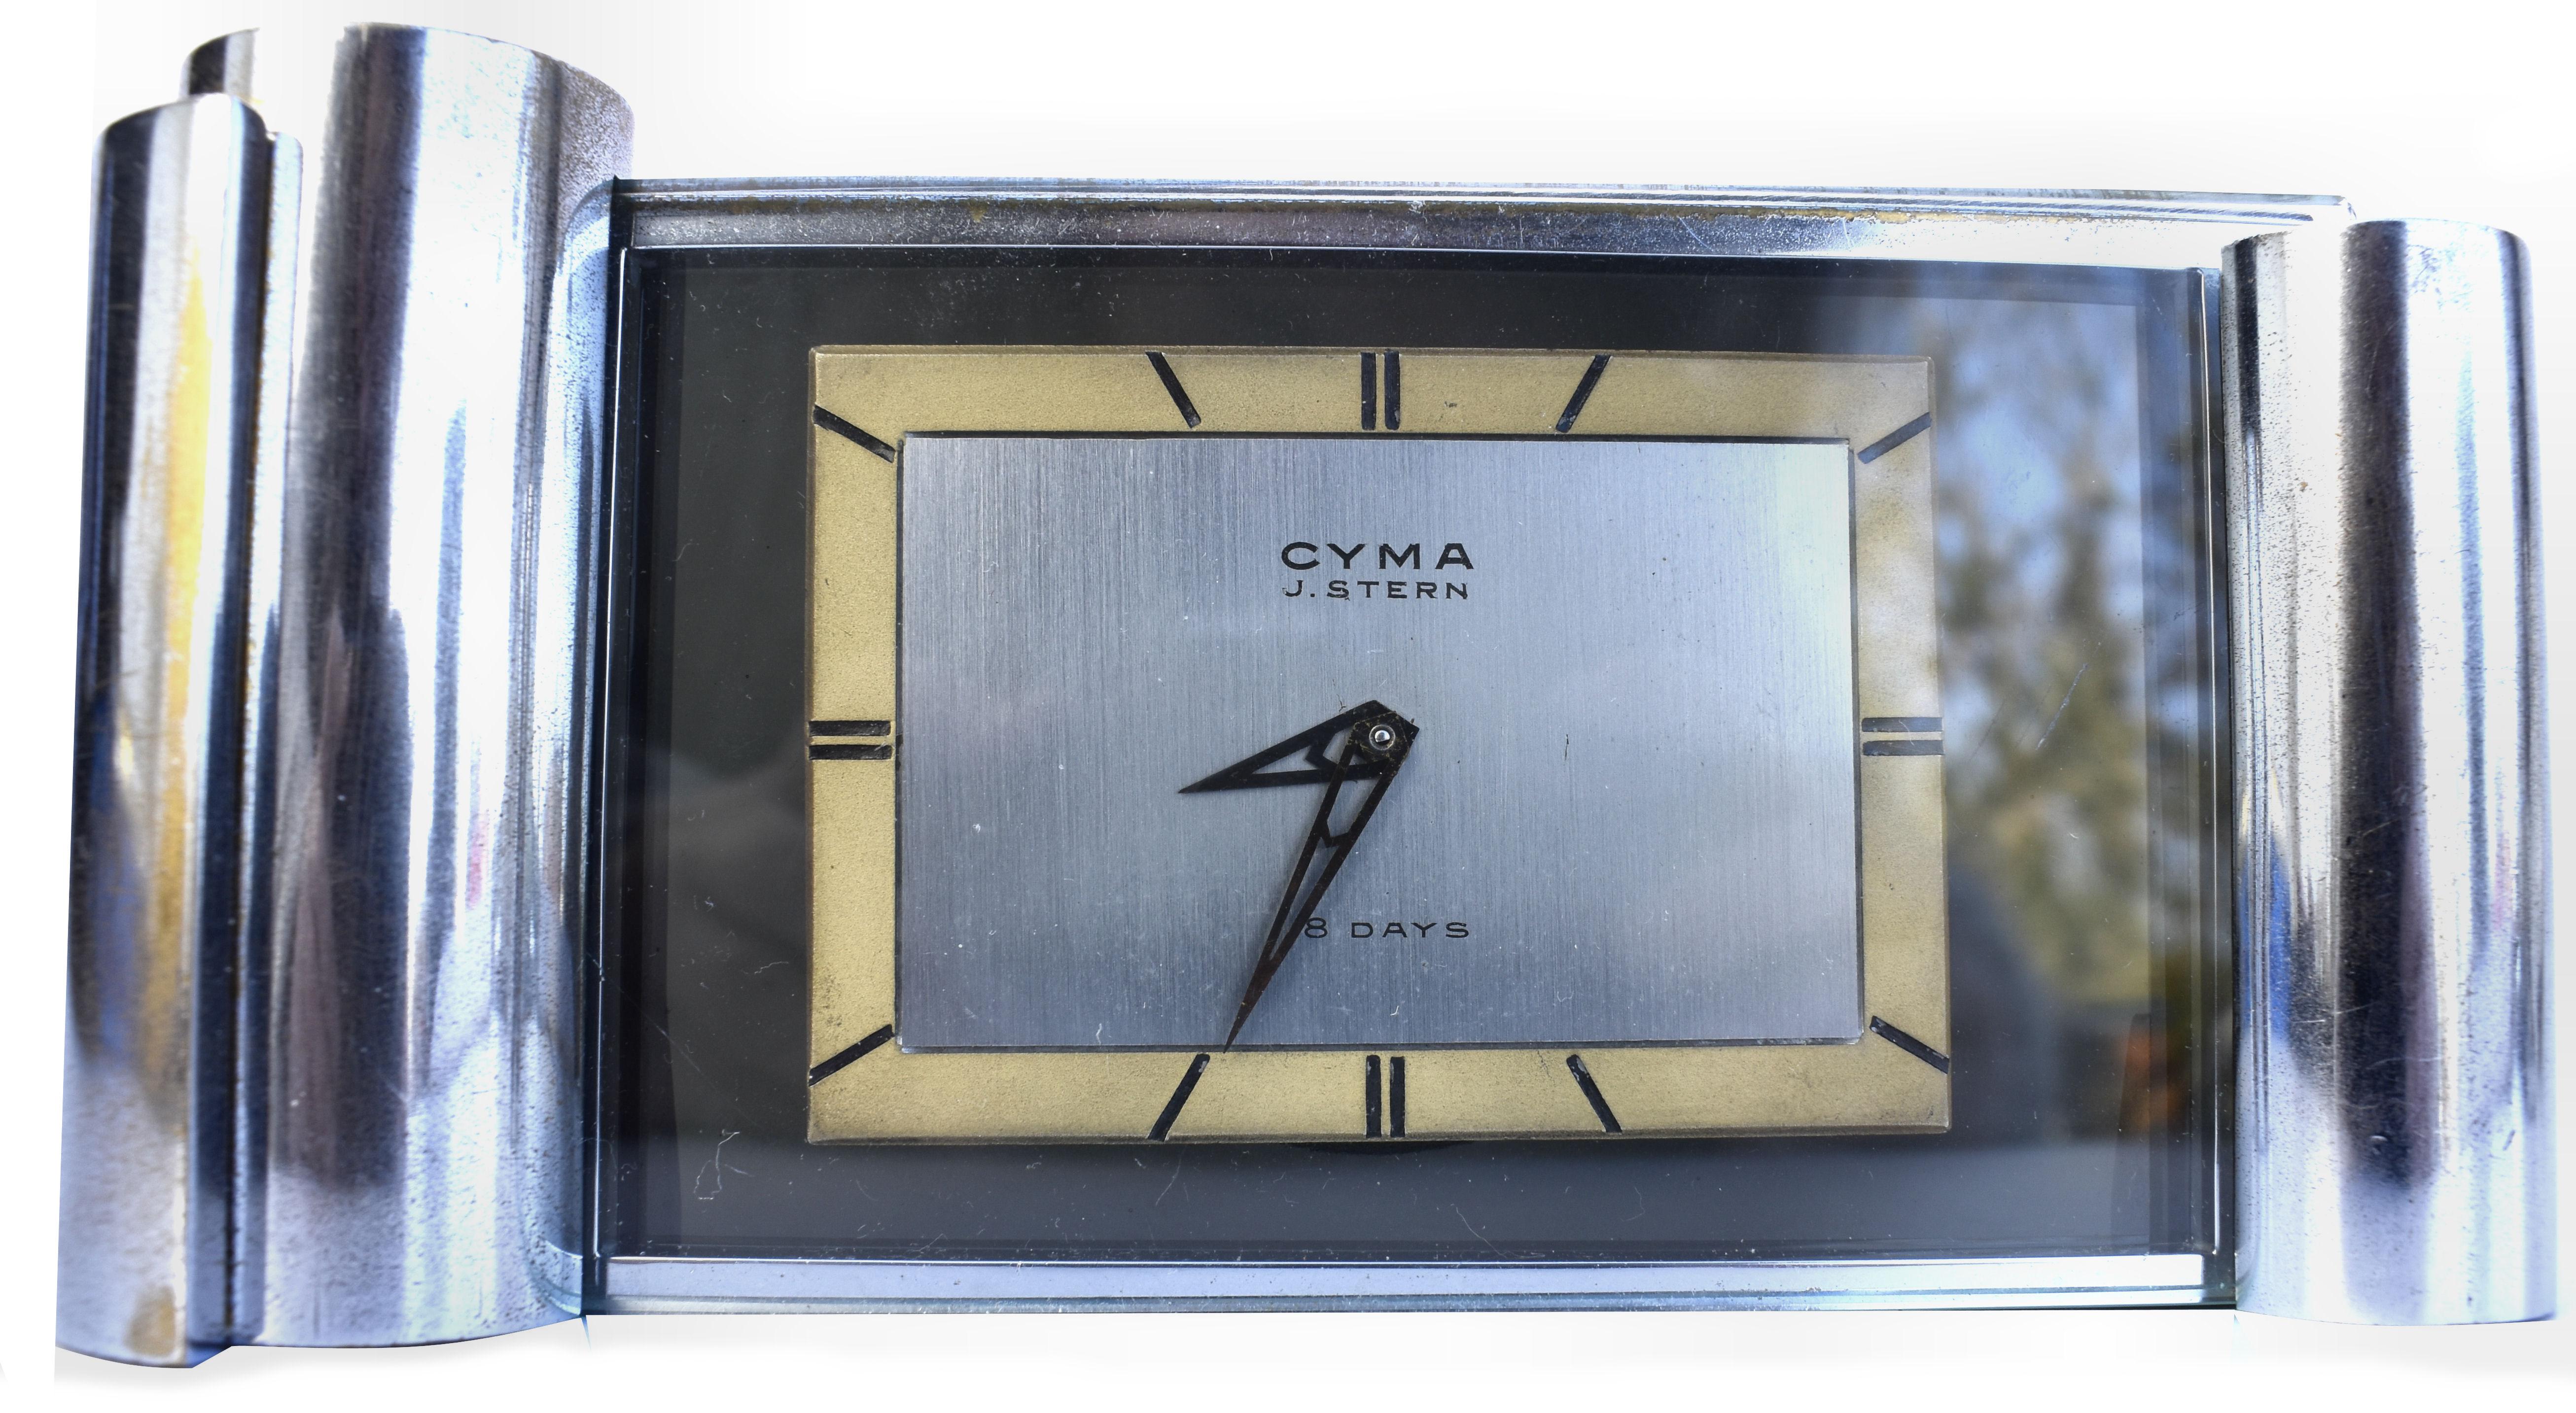 Impressionnante horloge moderniste des années 1930 par CYMA. Entièrement révisée par notre horlogue, elle est en excellent état de marche et garde l'heure. Il s'agit vraiment d'une horloge d'une lourdeur trompeuse, avec un boîtier en laiton massif